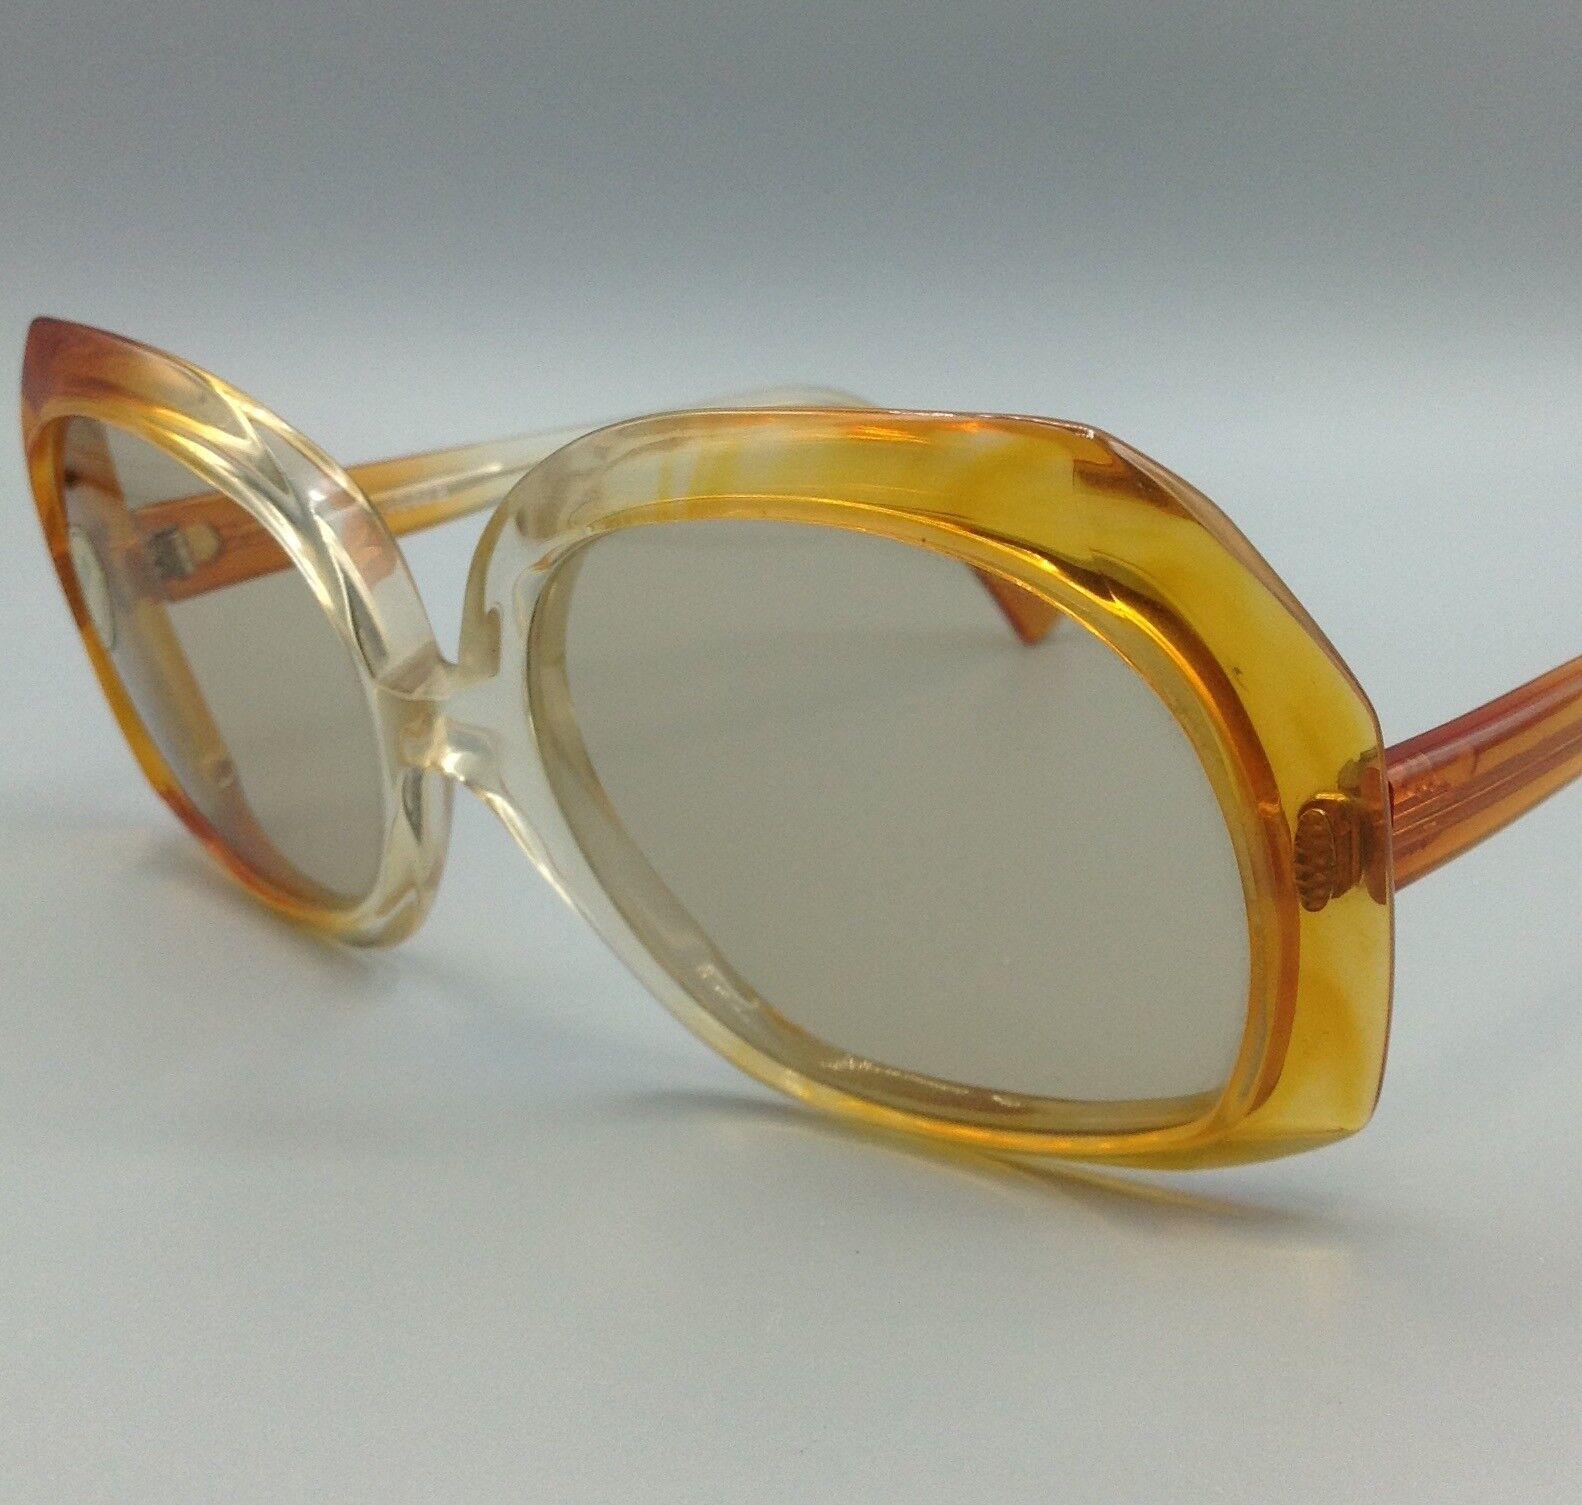 occhiale da sole LOZZA MYRIA vintage sunglasses made in Italy Lozza Myria